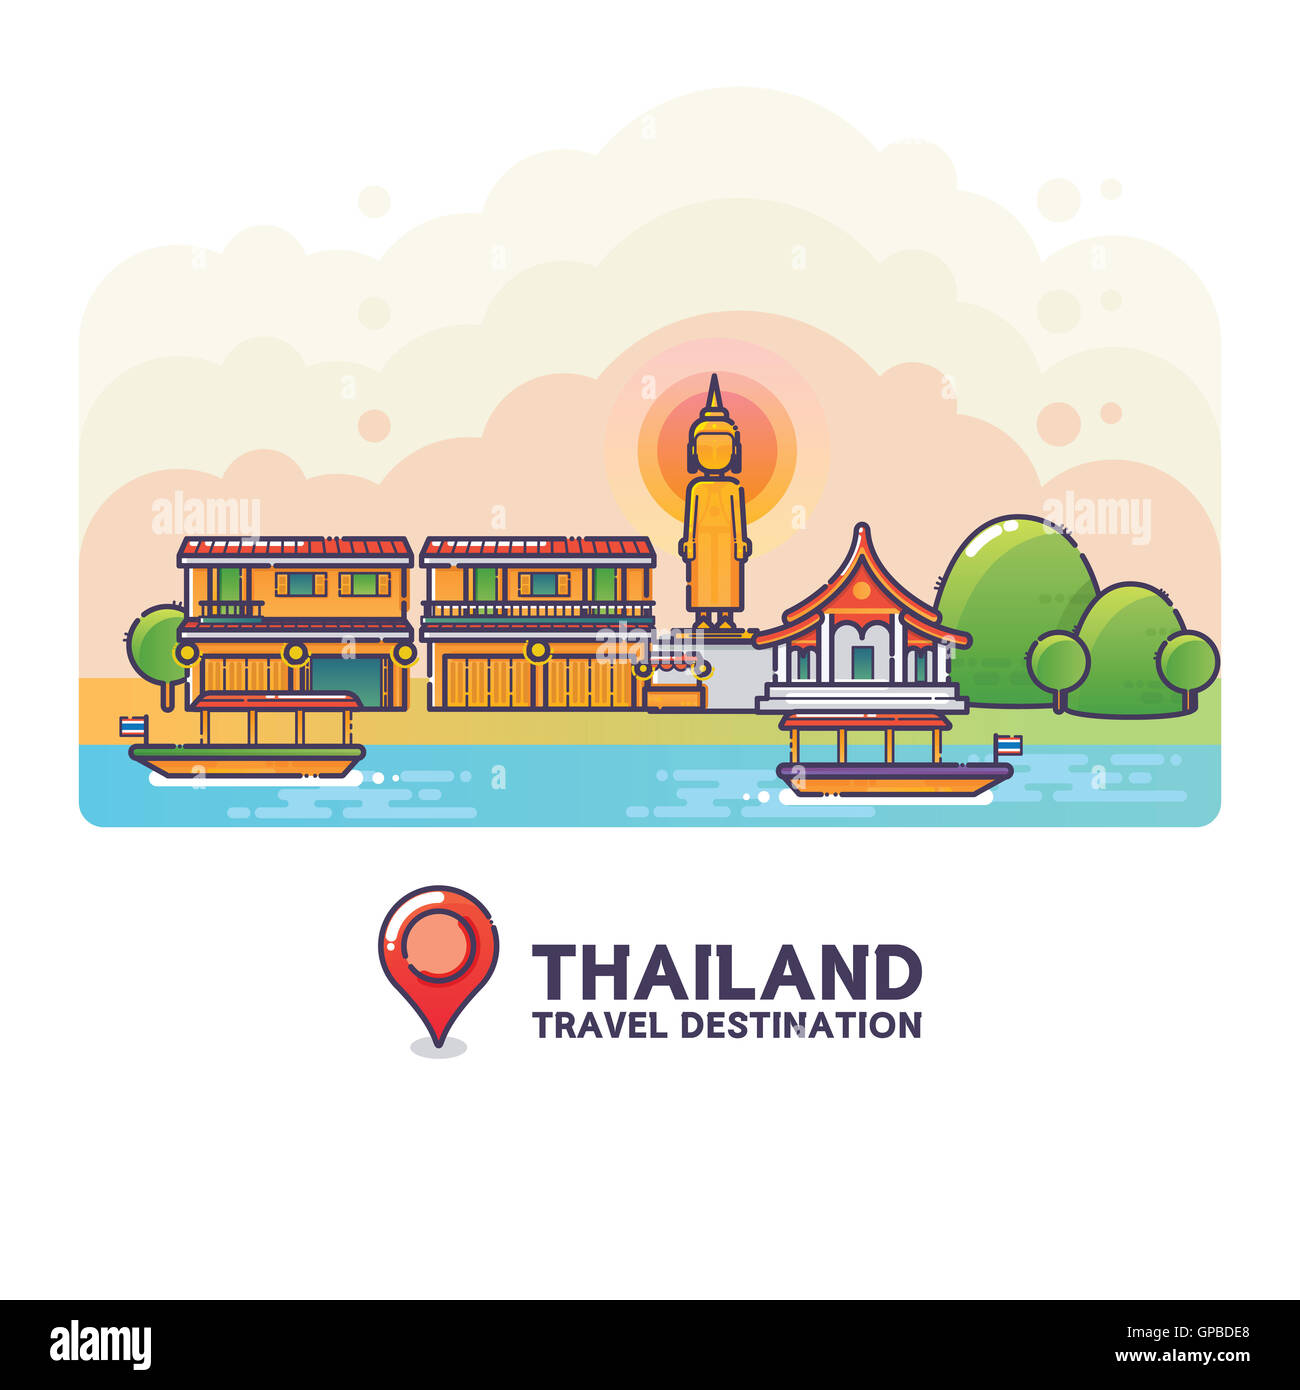 Vektor-Illustration von Thailand Travel Destination bunte detaillierte Skyline für Icon, Banner, Poster, Postkarte. Linearen Stil Stockfoto